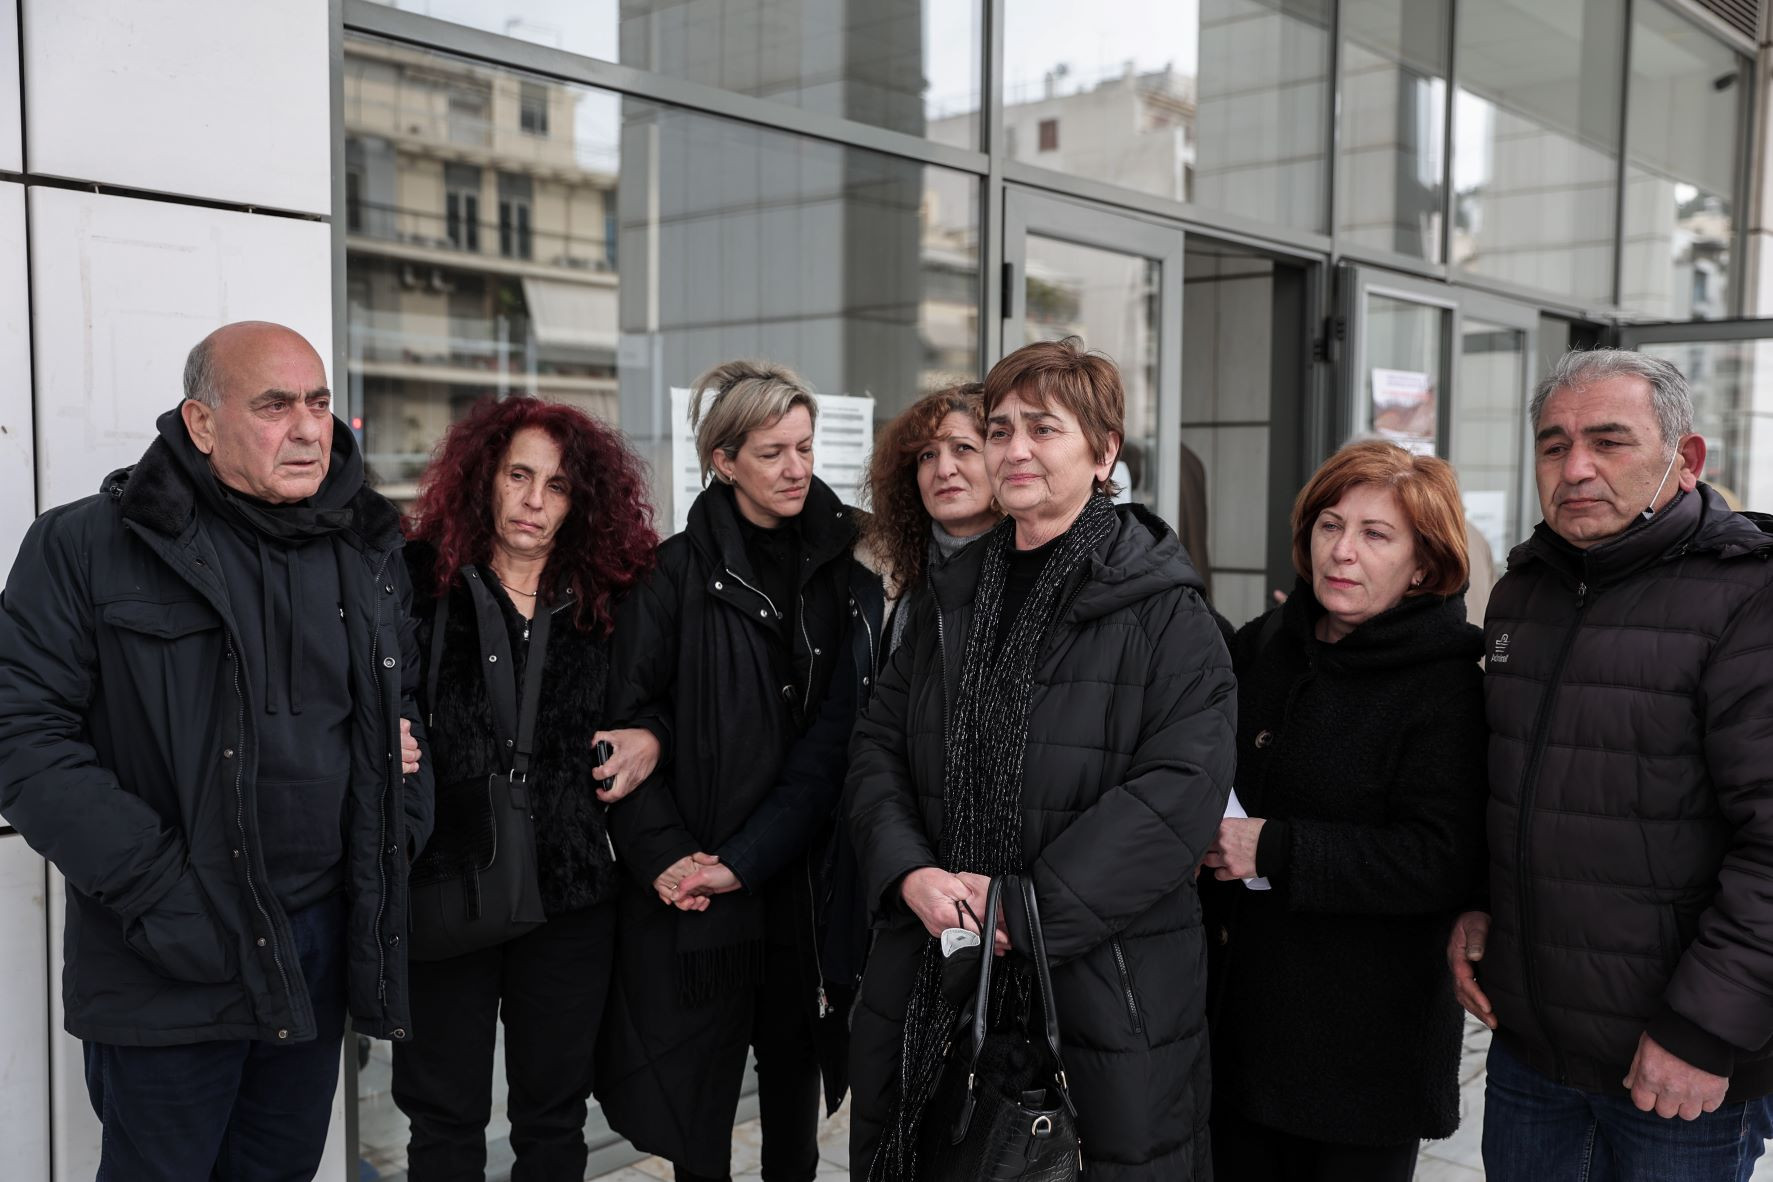 Συνεχίζεται στο Μικτό Ορκωτό Εφετείο η δίκη για τον θάνατο της Ελένης Τοπαλούδη